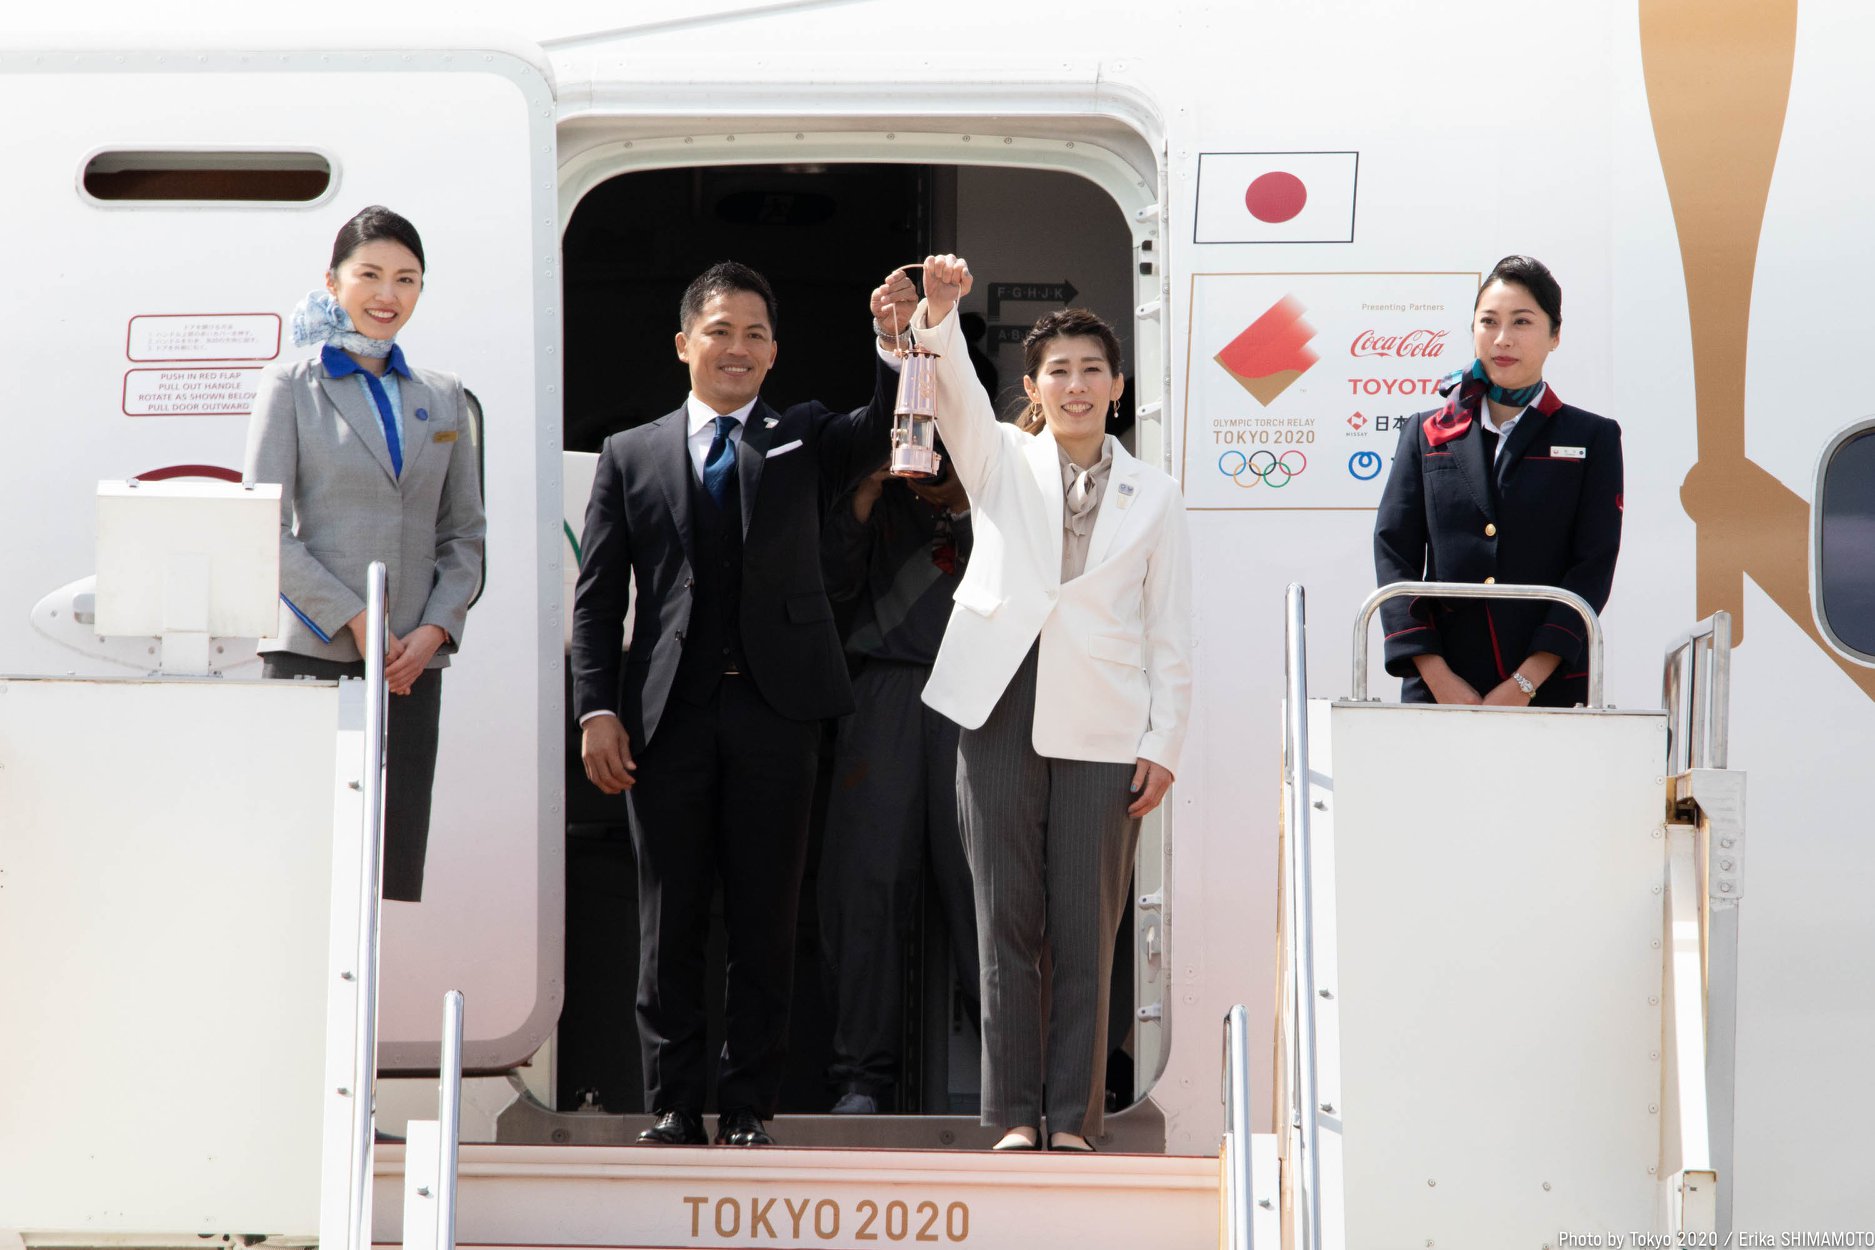 Olimpijski ogenj začel pot po Japonski